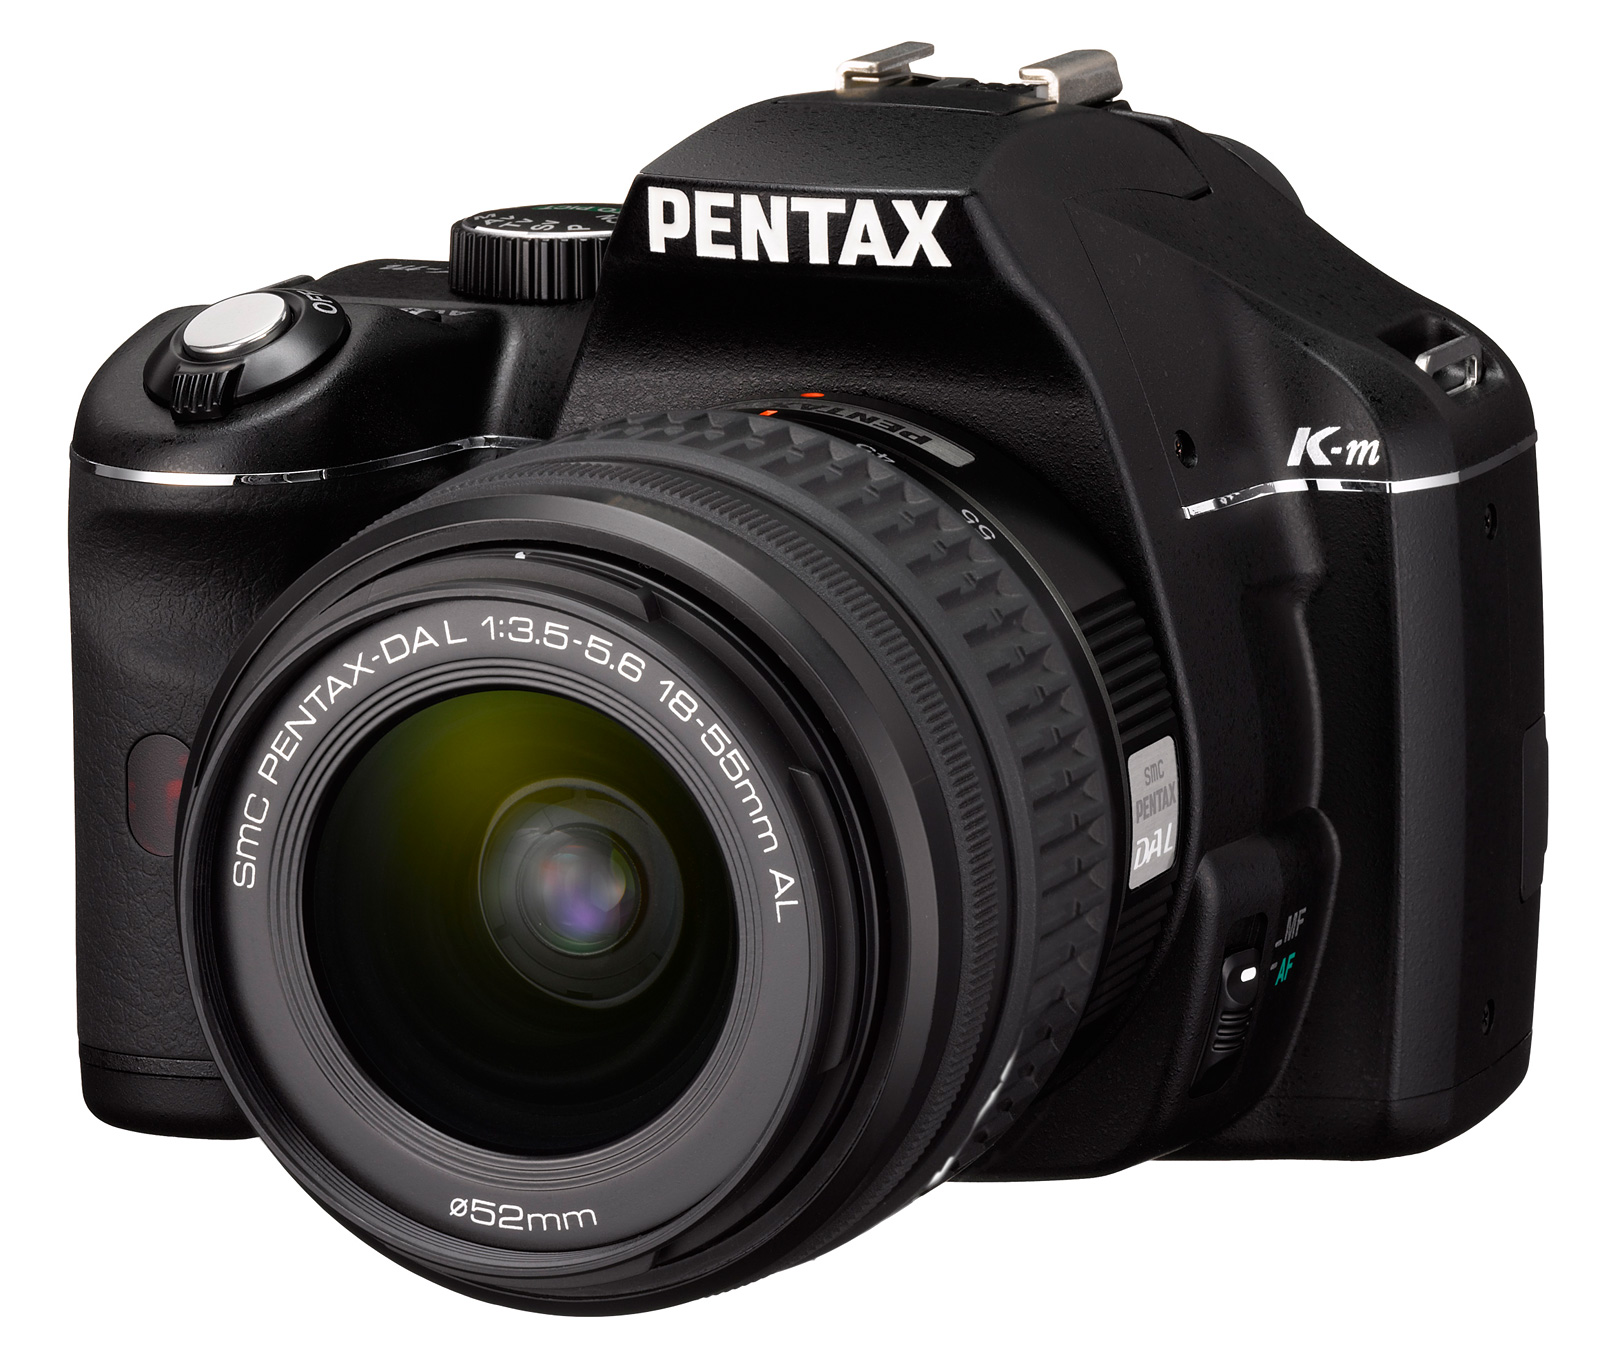 使いやすいエントリークラスのデジタル一眼レフカメラ 「PENTAX K-m」新発売｜RICOH IMAGING